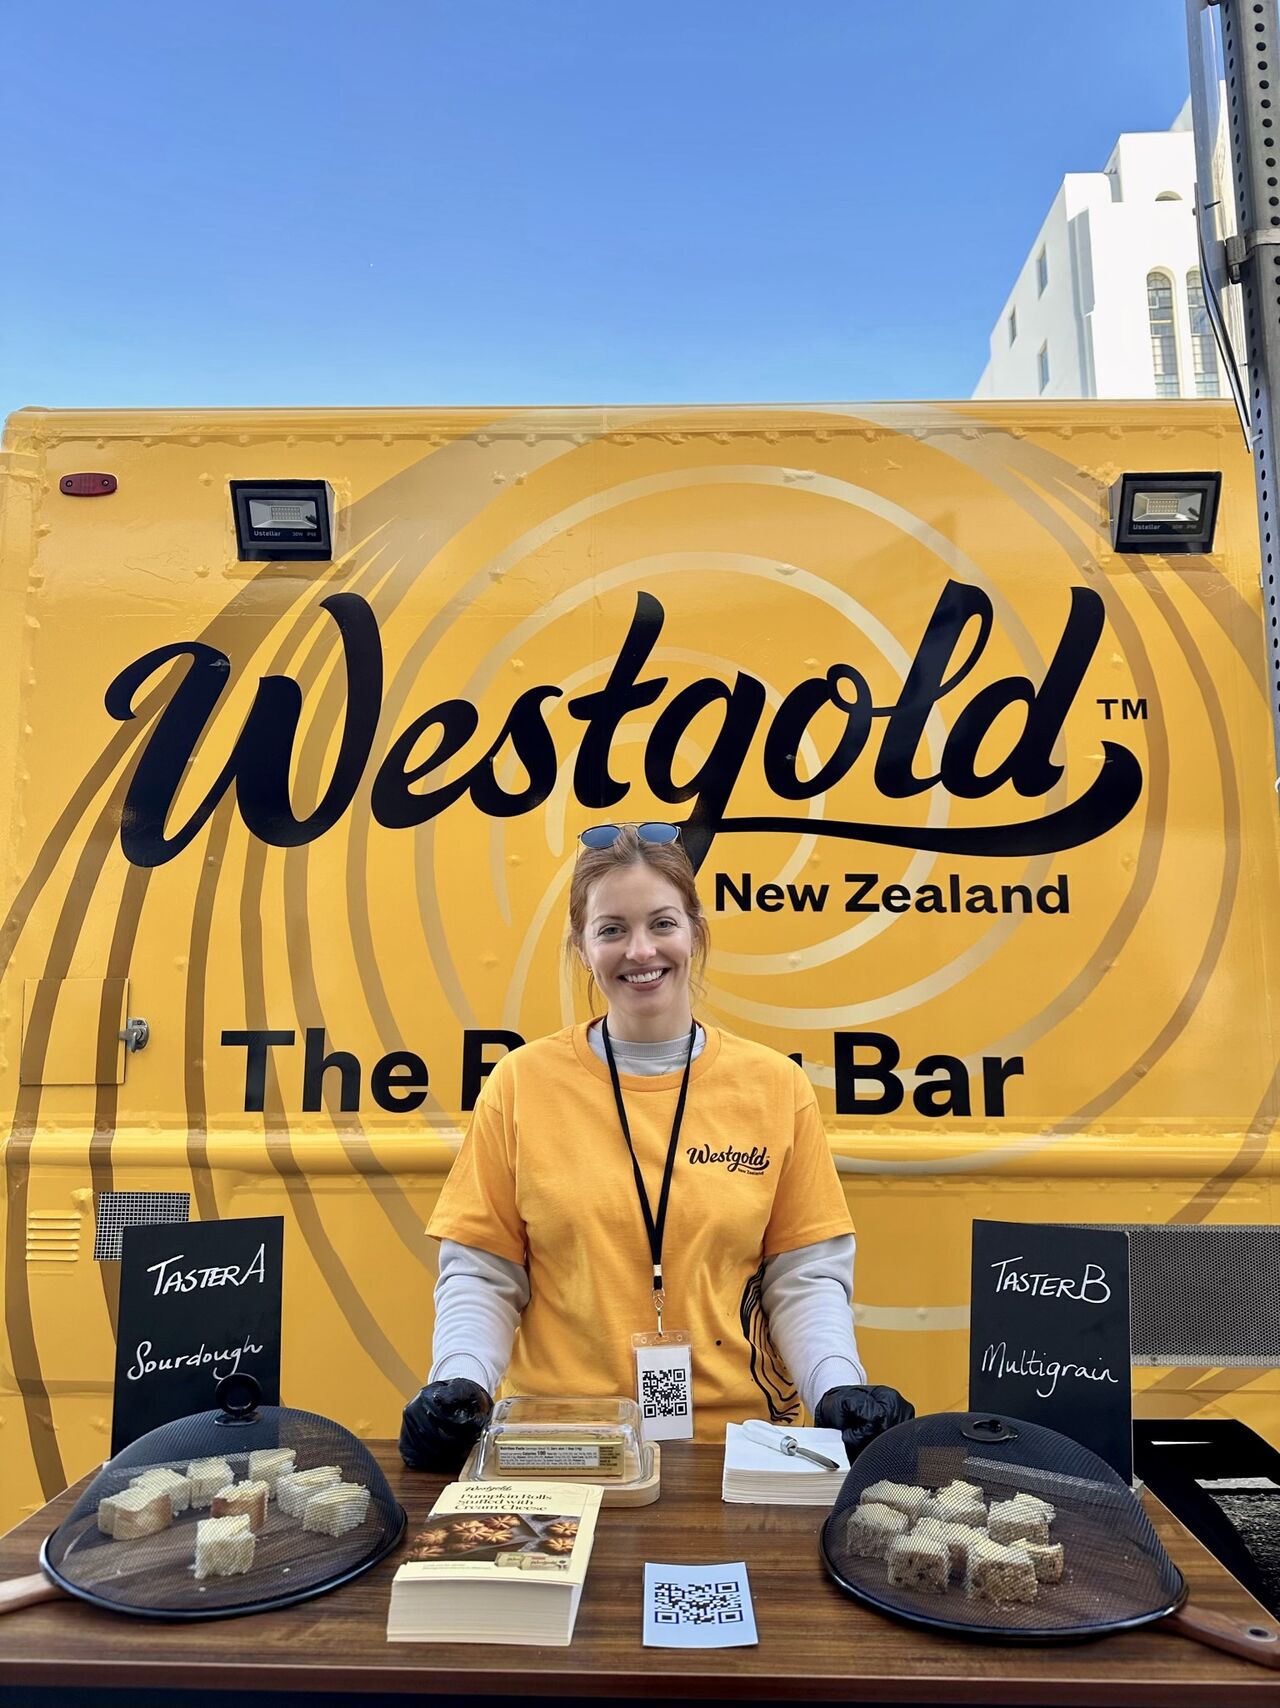 Westgold butter bar.